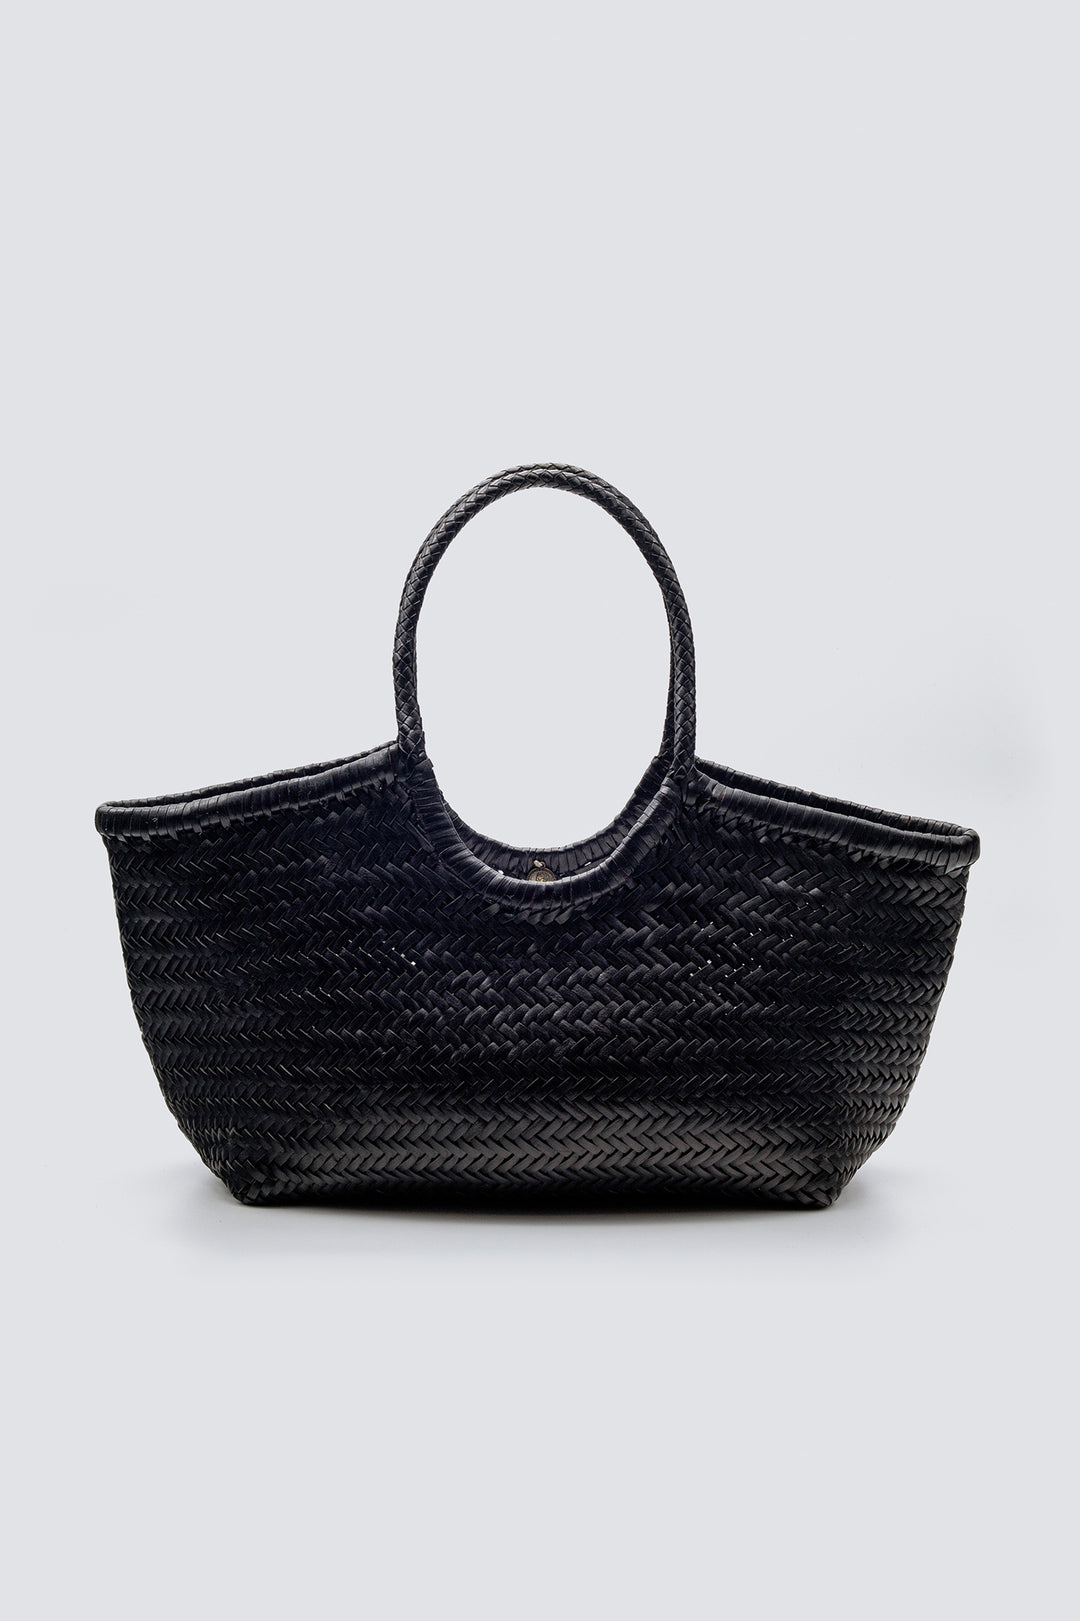 Dragon Diffusion woven leather bag handmade - Nantucket Big Black